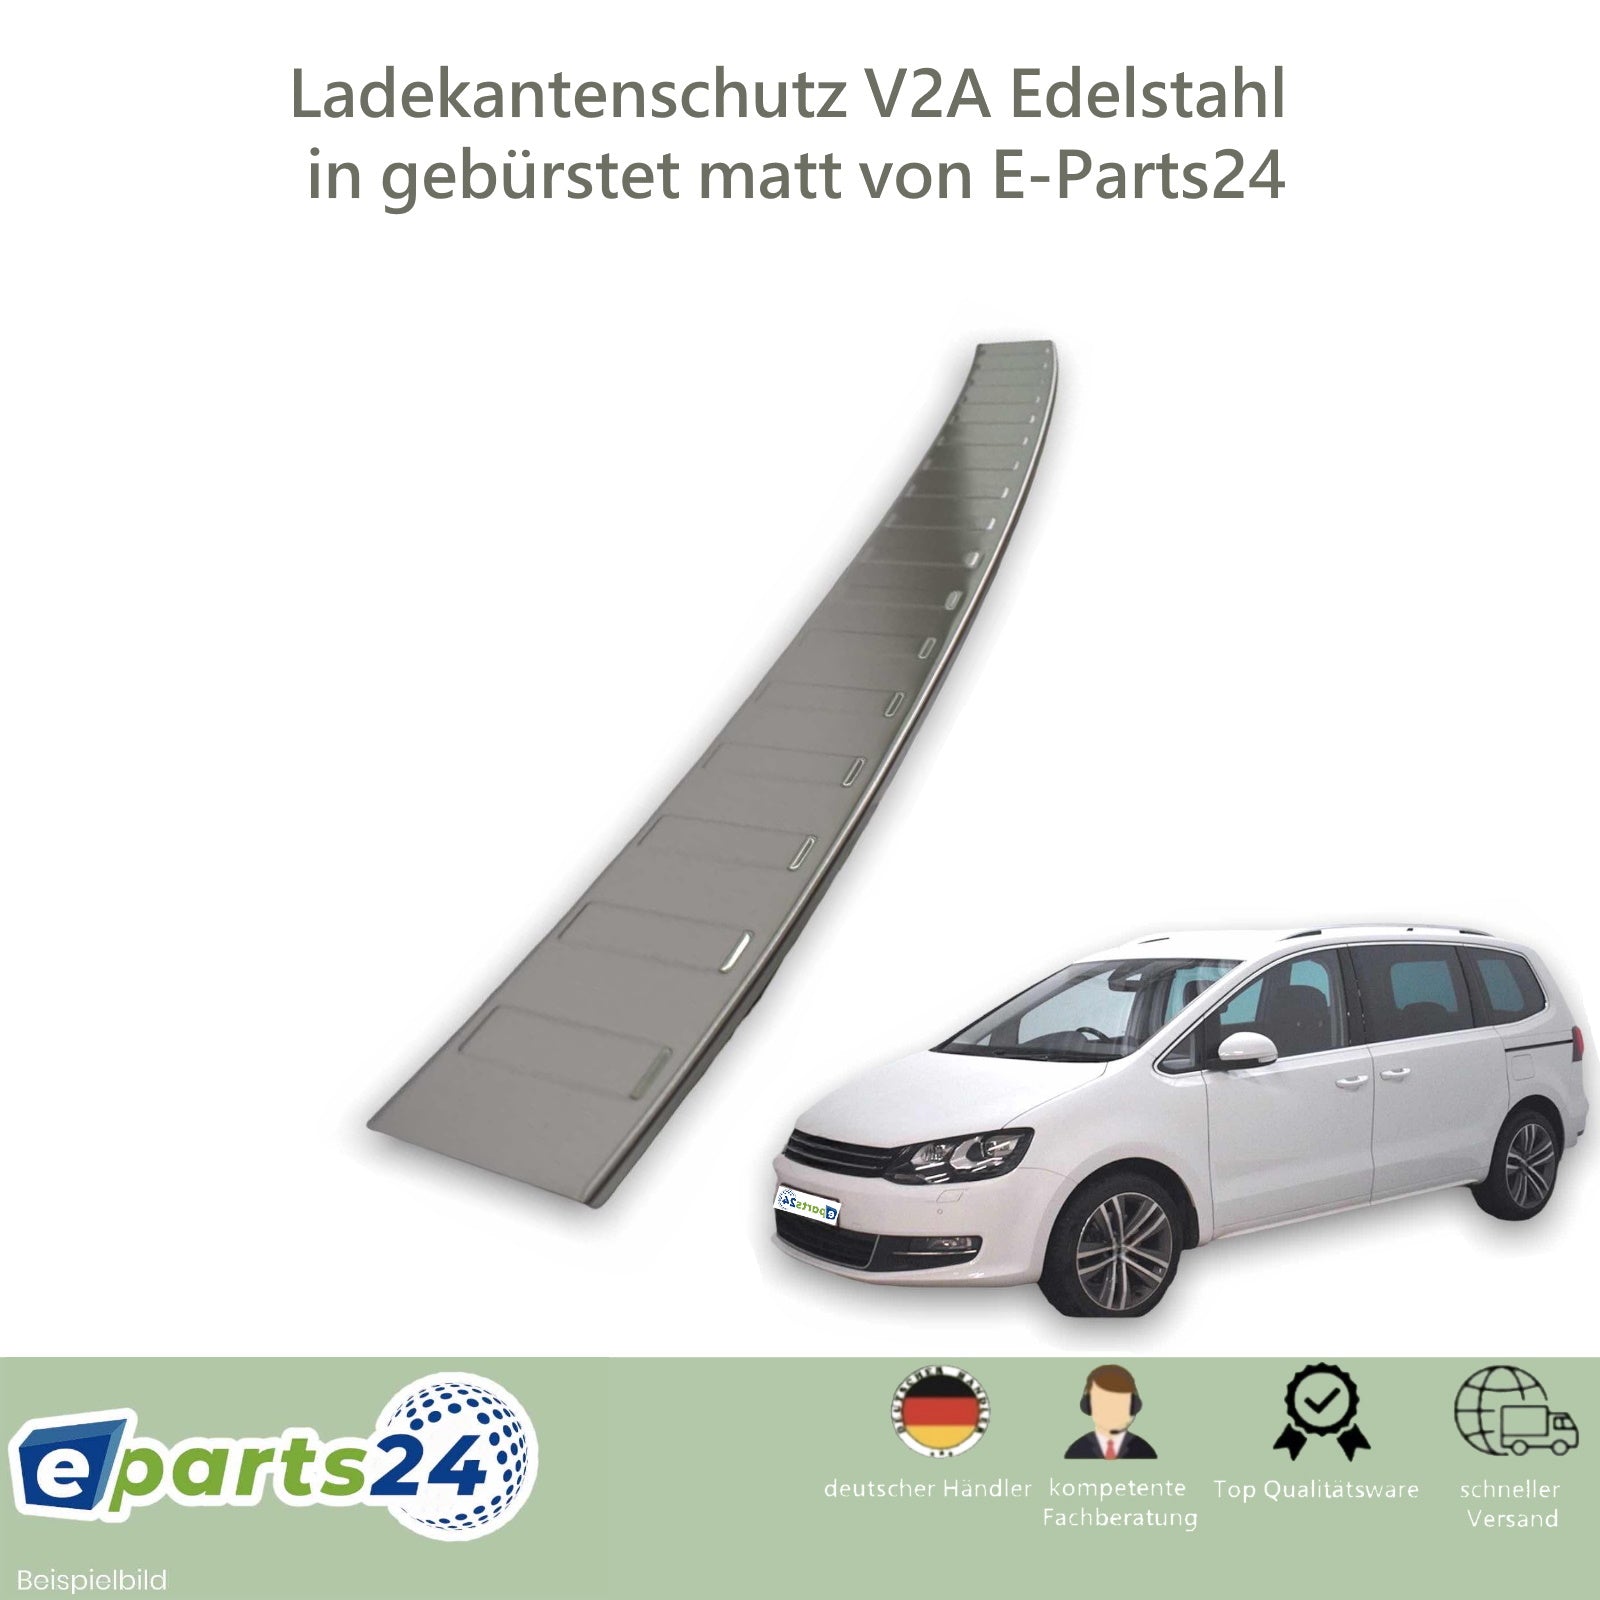 Ladekantenschutz für VW Seat 2010 Sharan – Alhambra E-Parts24 II Edelstahl II 2 ab